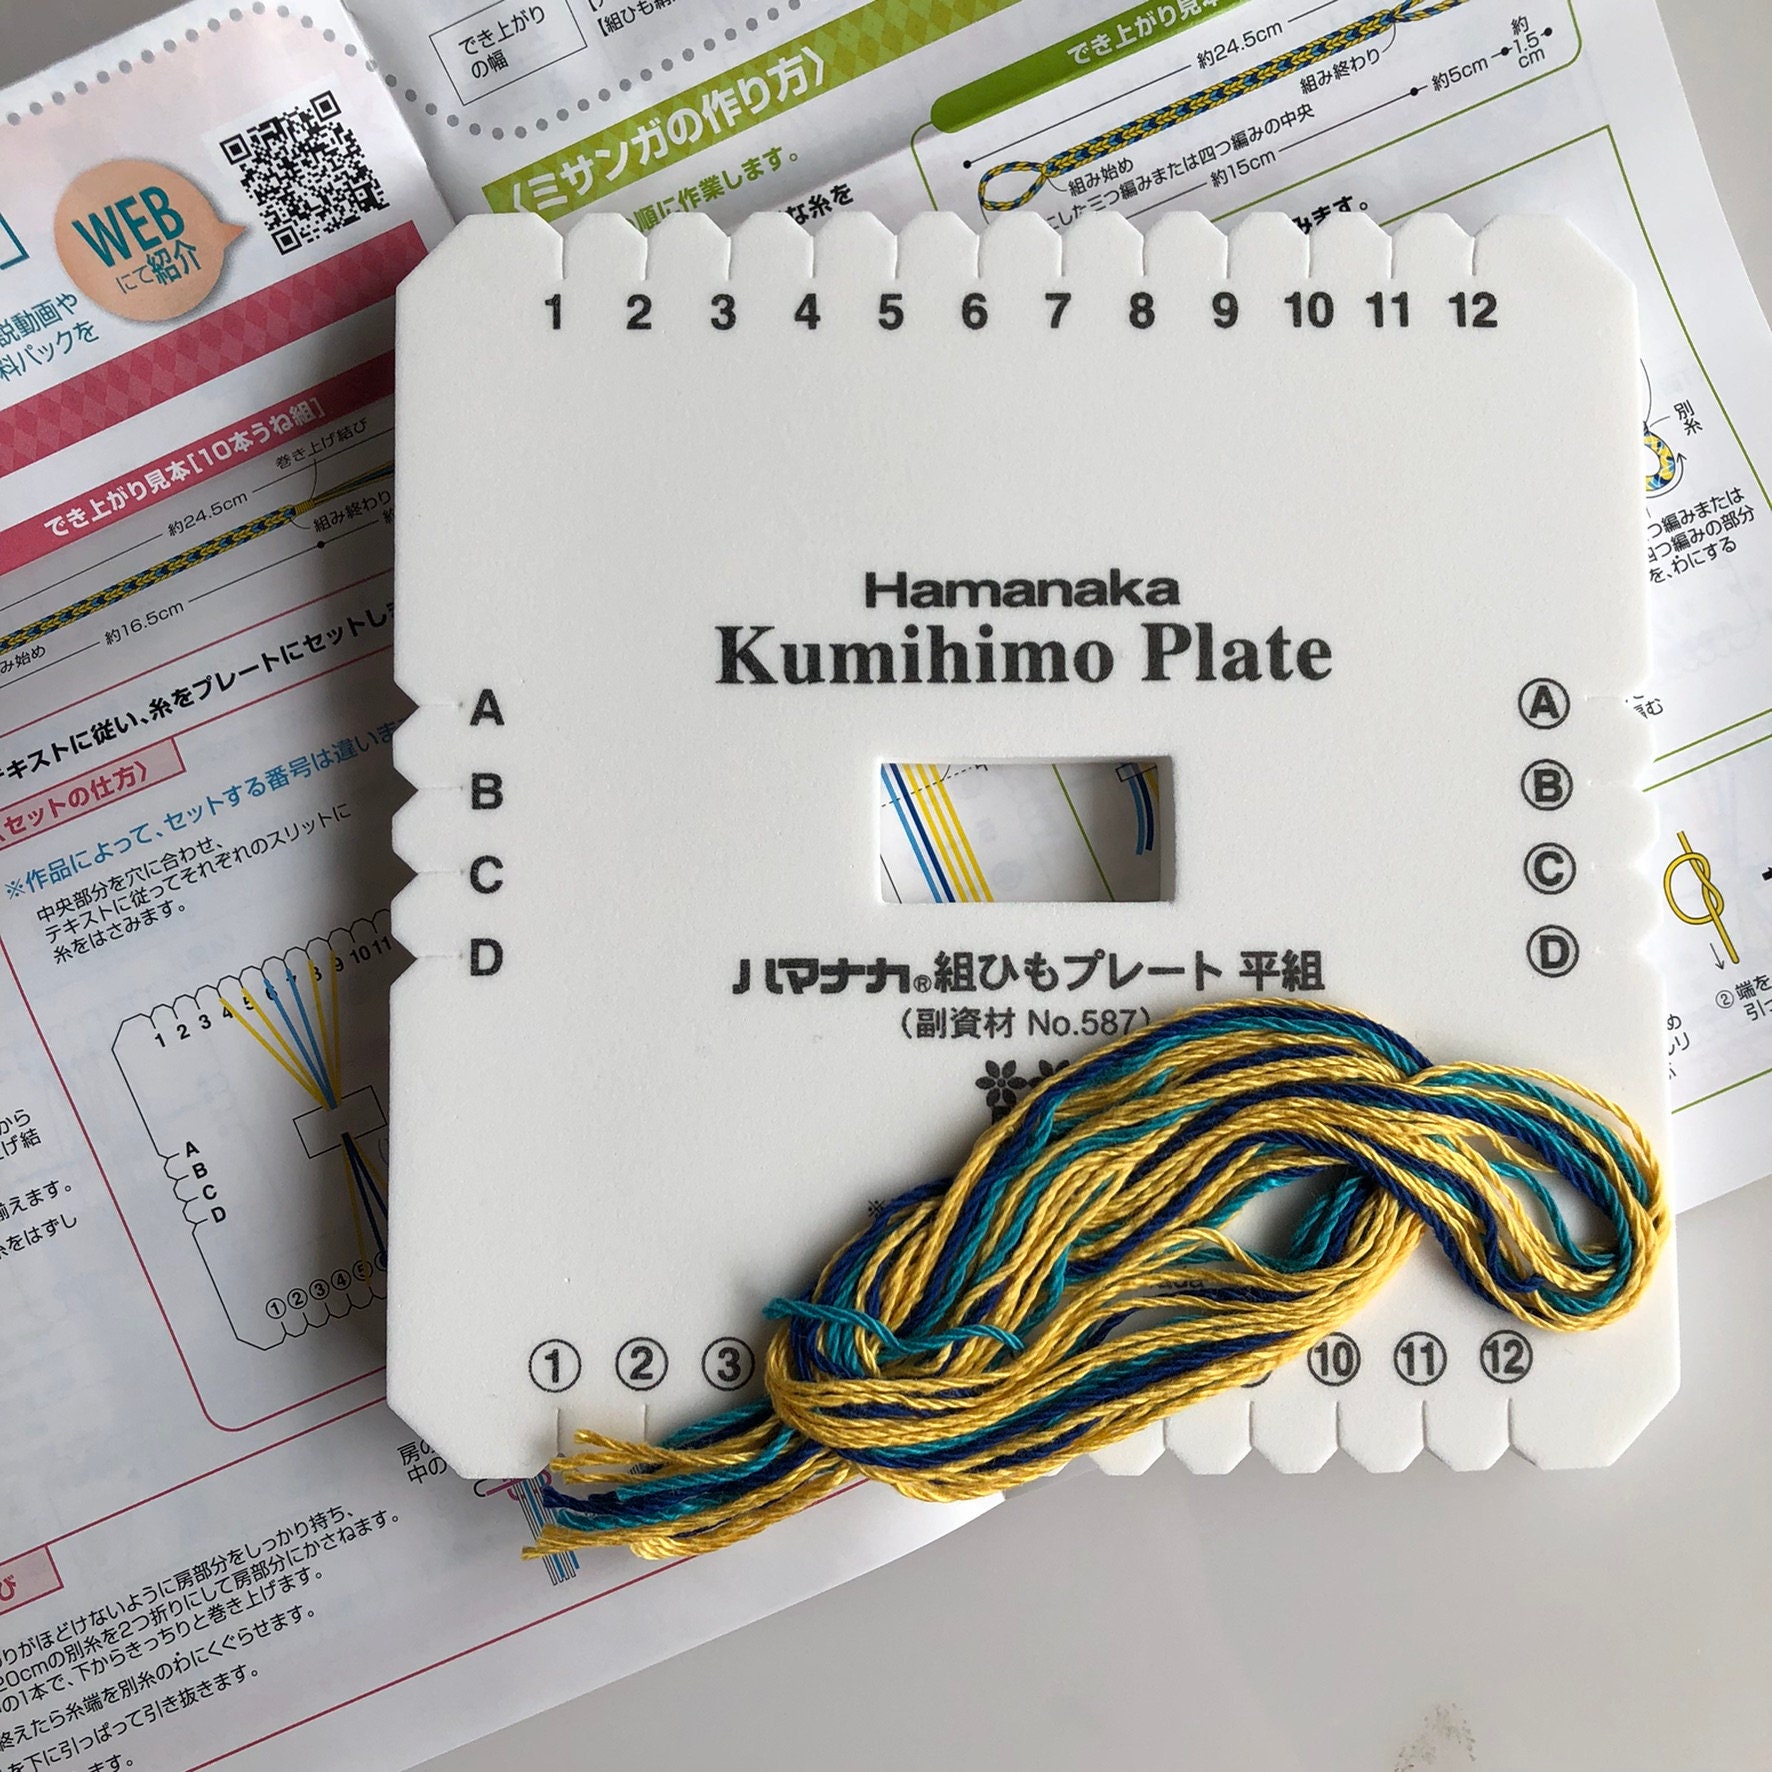 521-000: Hamanaka Kumihimo Disk (15cm x 1cm thick)